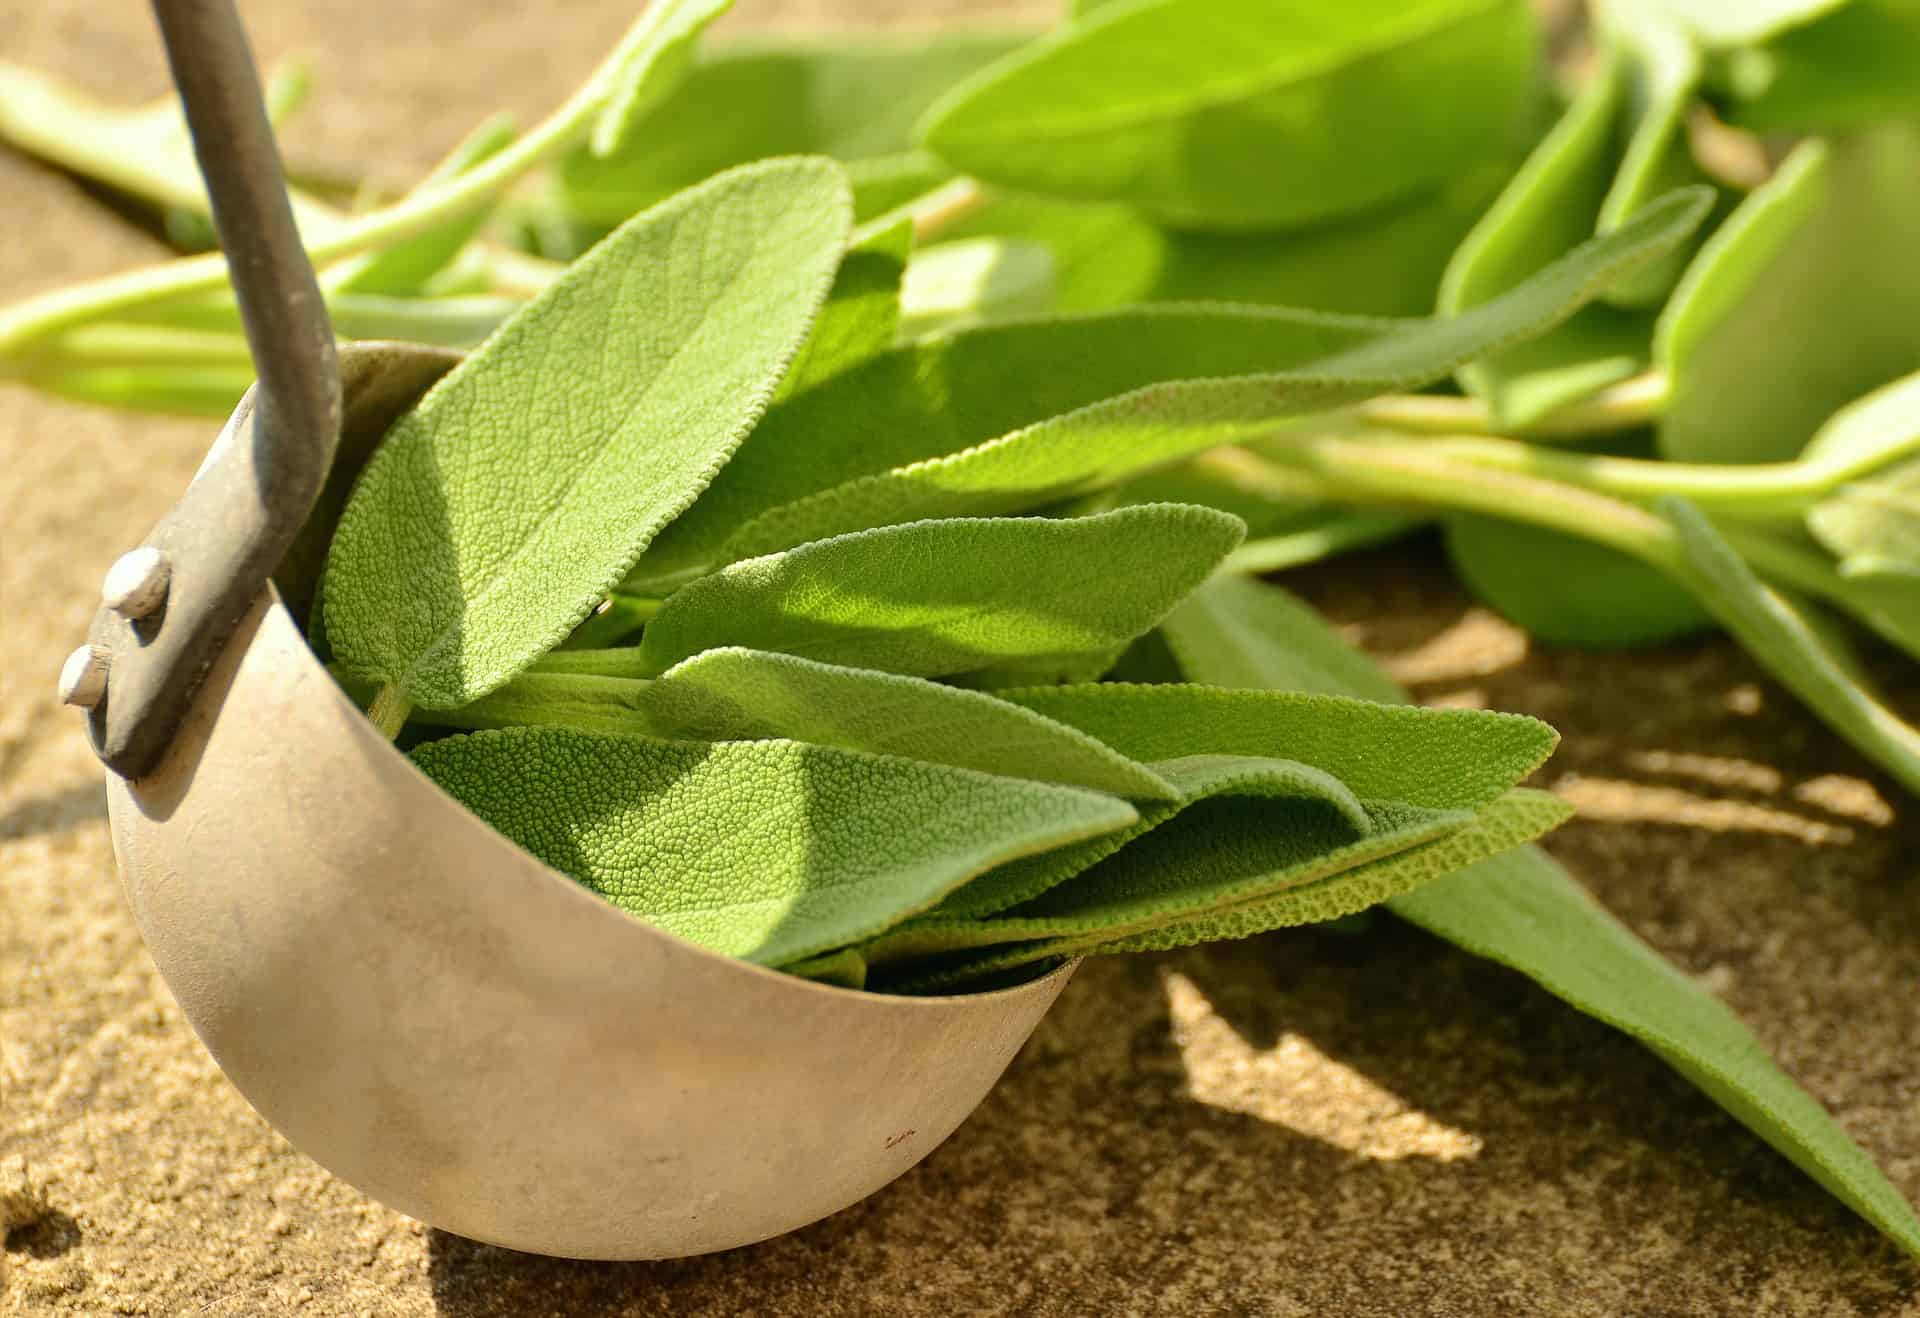 Oltre alla fragranza cosmetica, ecco 4 benefici per la salute delle foglie di salvia che sono raramente conosciuti